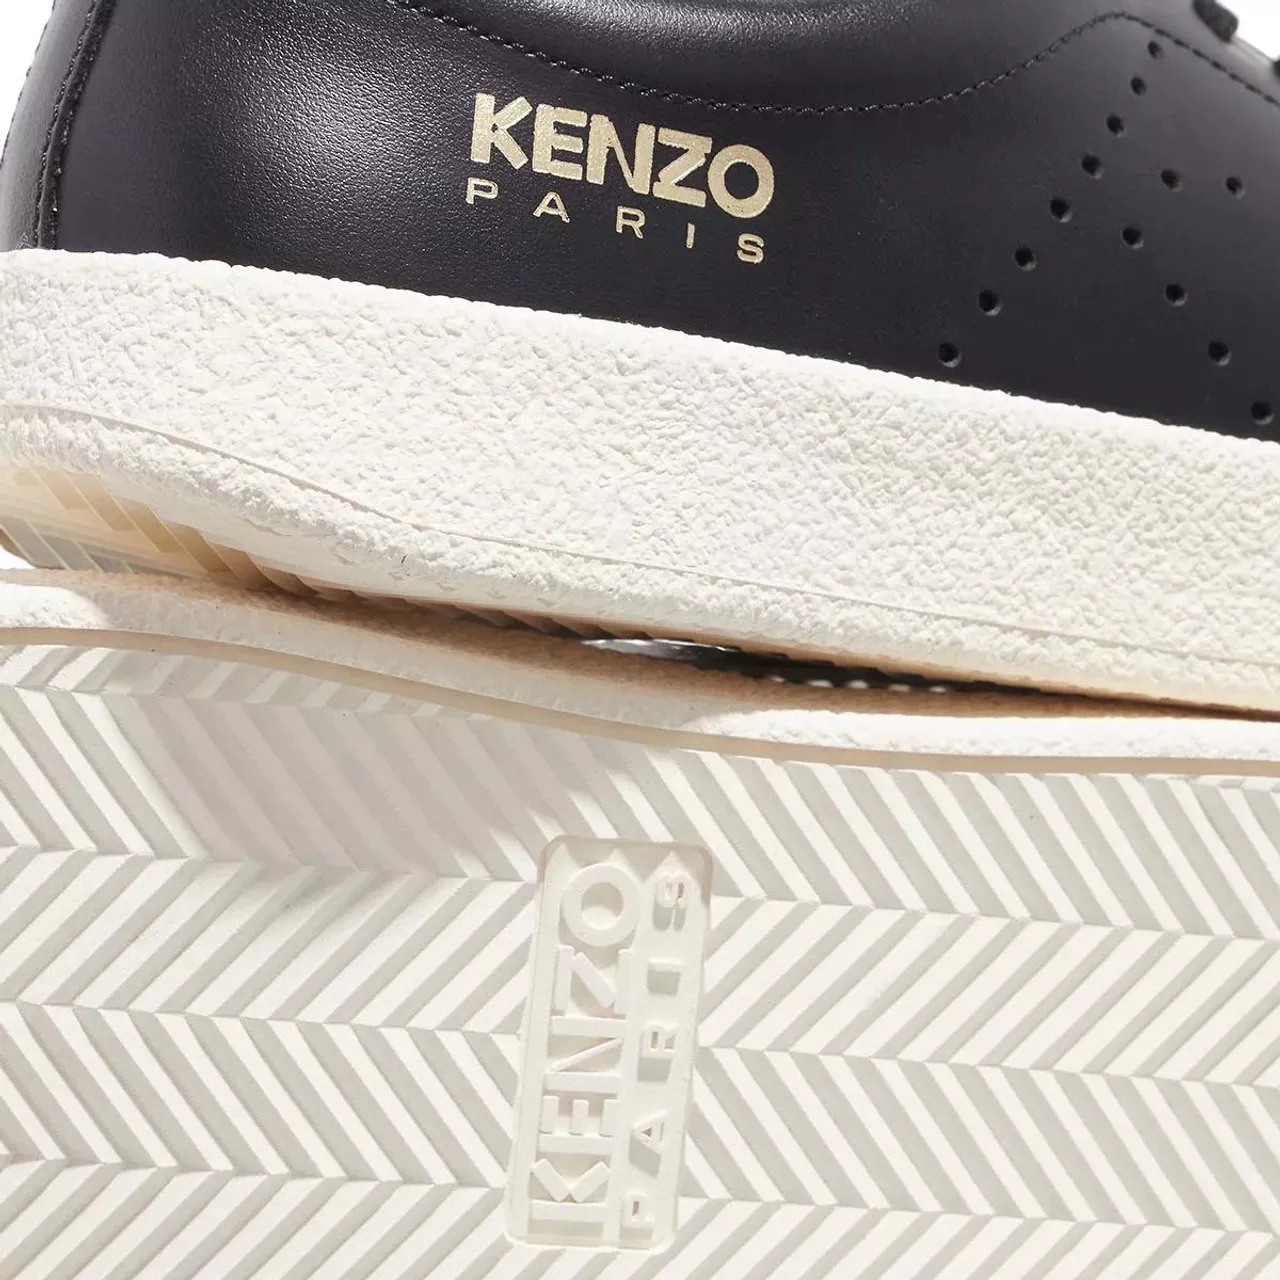 Kenzo Sneakers - Low top sneaker - black - Sneakers for ladies